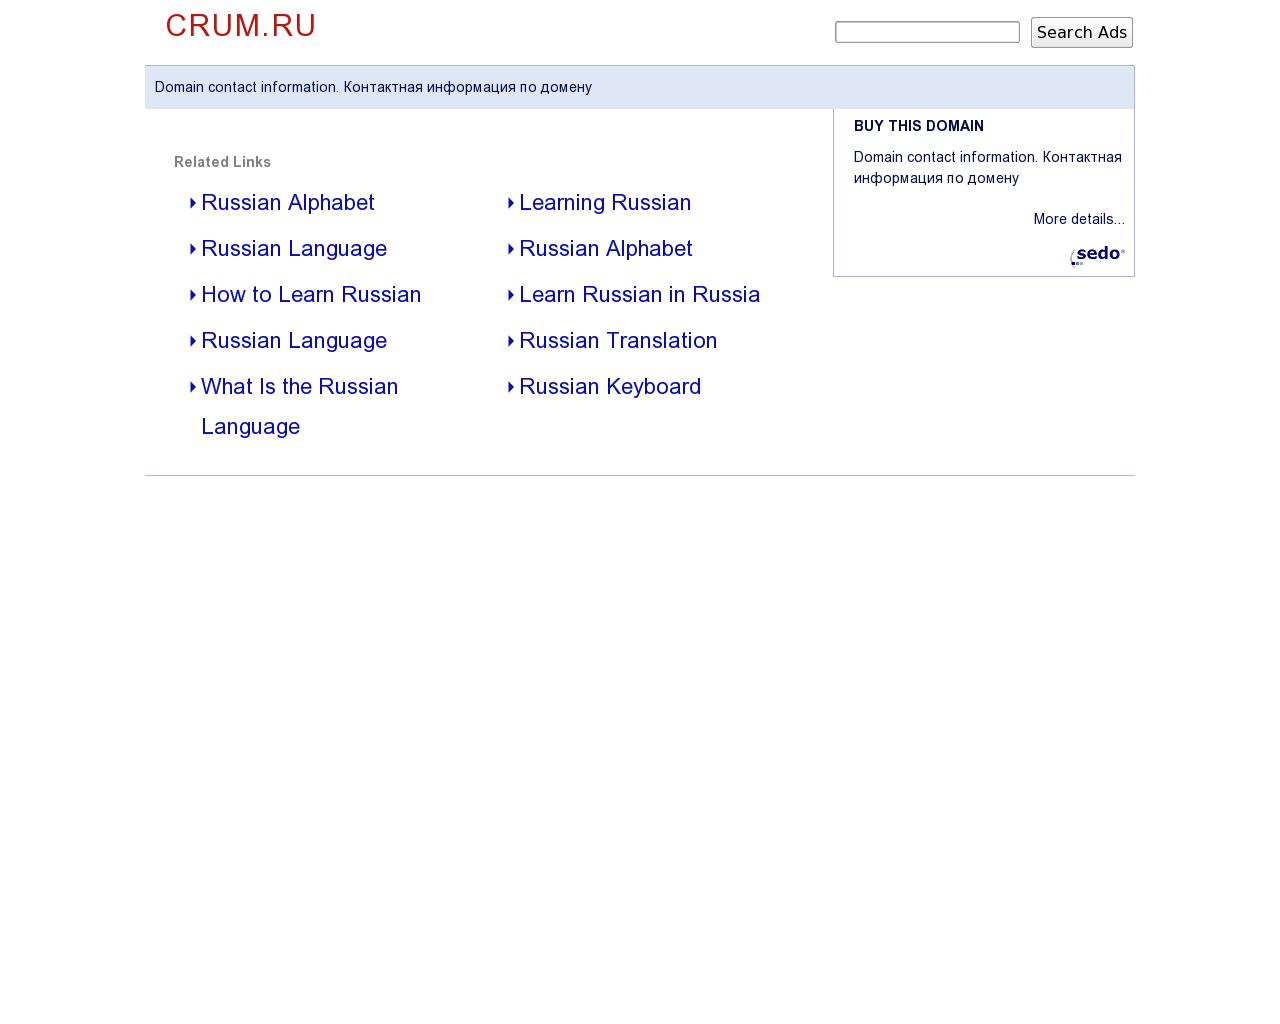 Изображение сайта crum.ru в разрешении 1280x1024